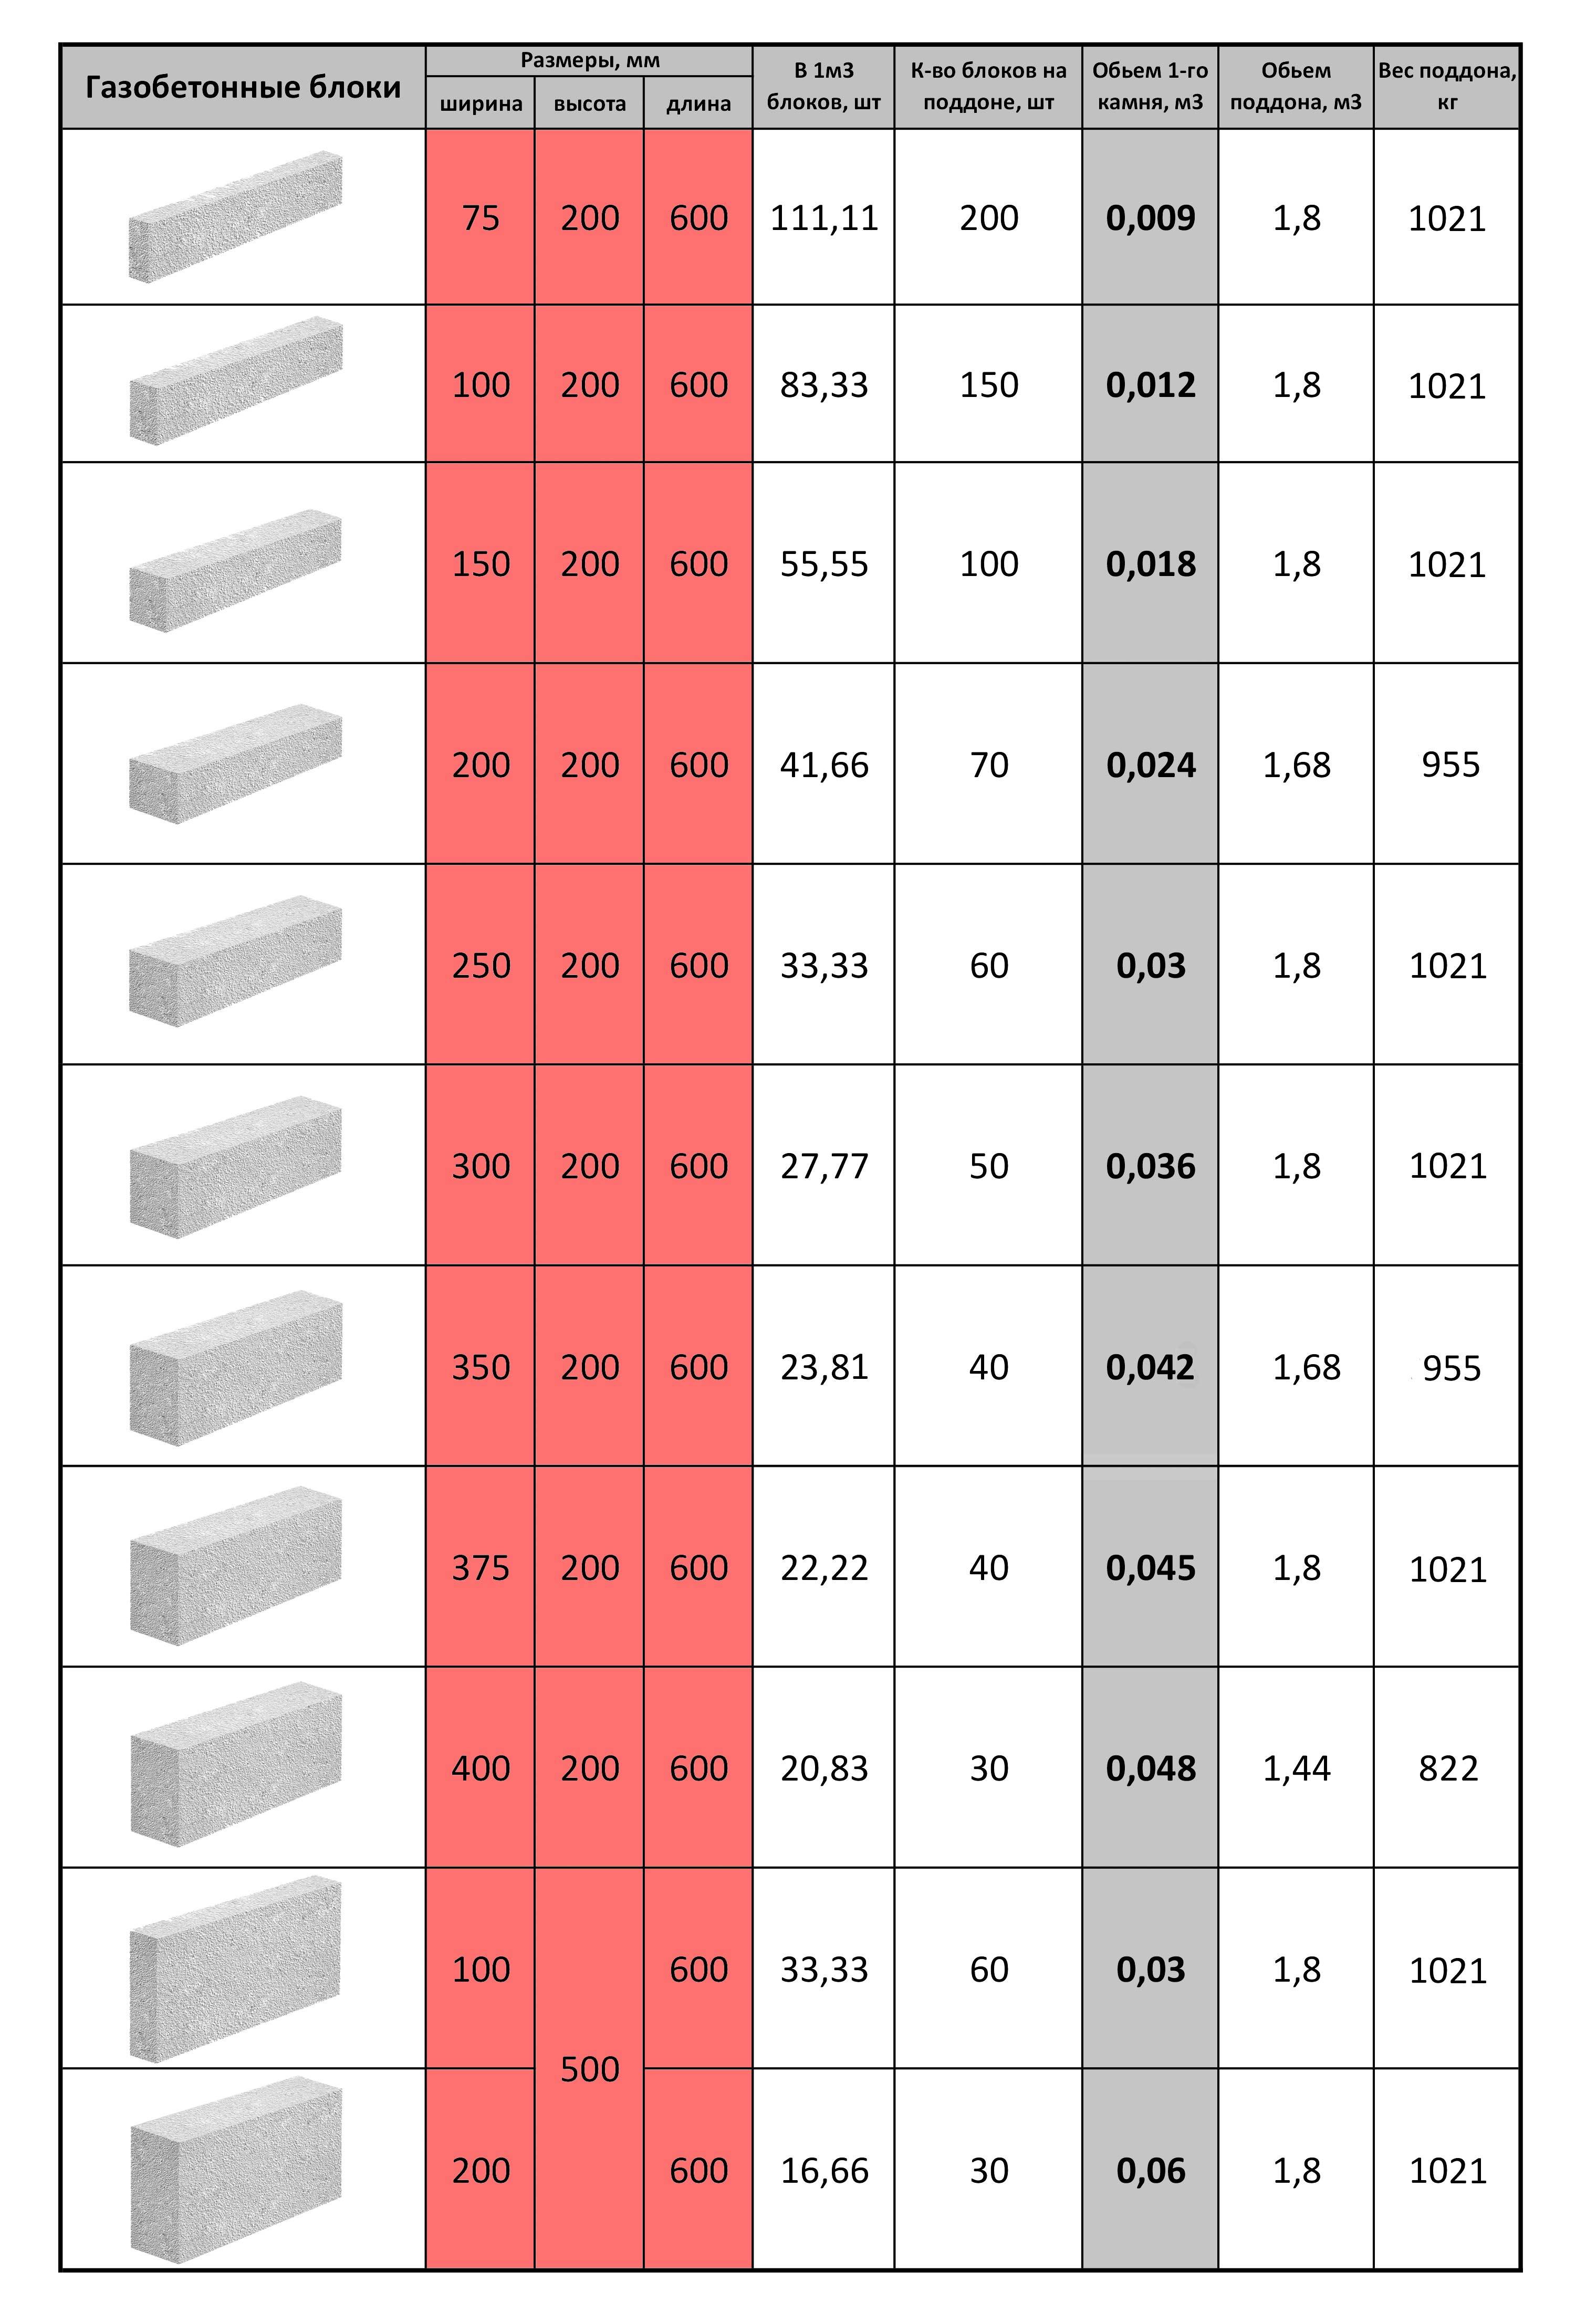 Стоимость блоков из пенобетона размером 20х30х60 см